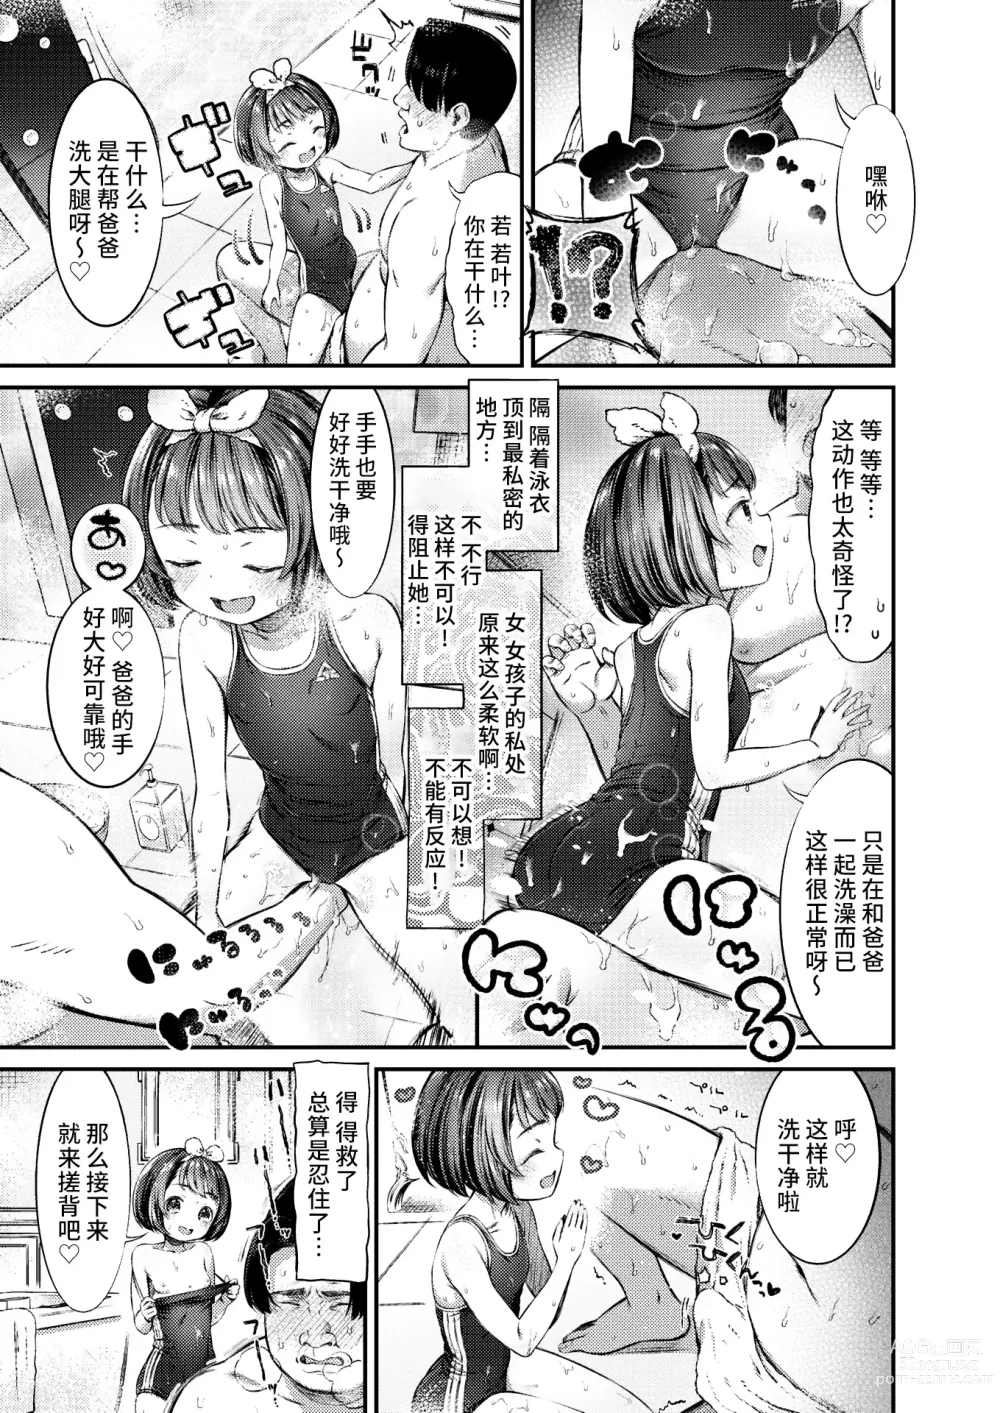 Page 5 of manga Papakatsu ni wa Kiken ga Ippai! - Papa Sex with Dangerous Girl